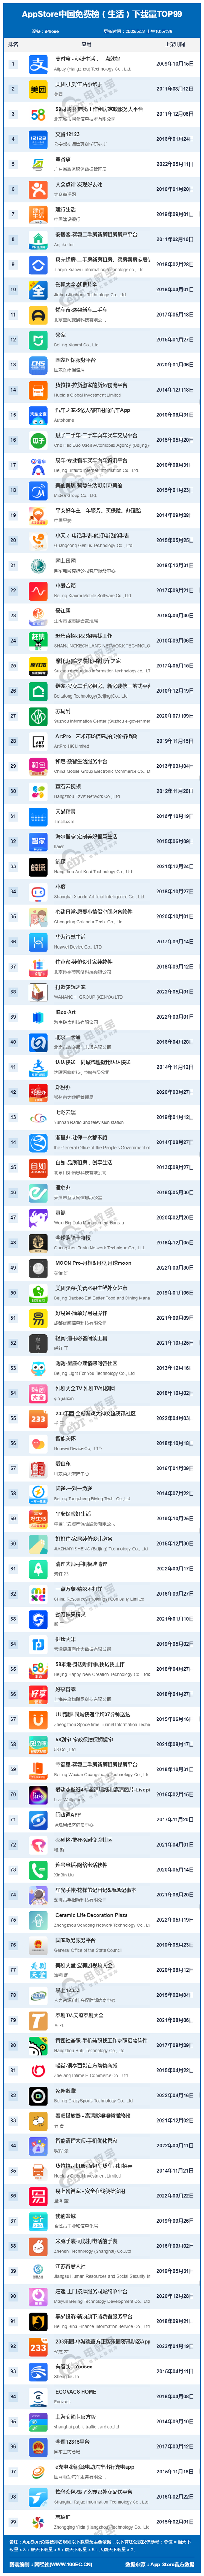 5月AppStore中国免费榜(生活)TOP99：支付宝 58同城 大众点评前十